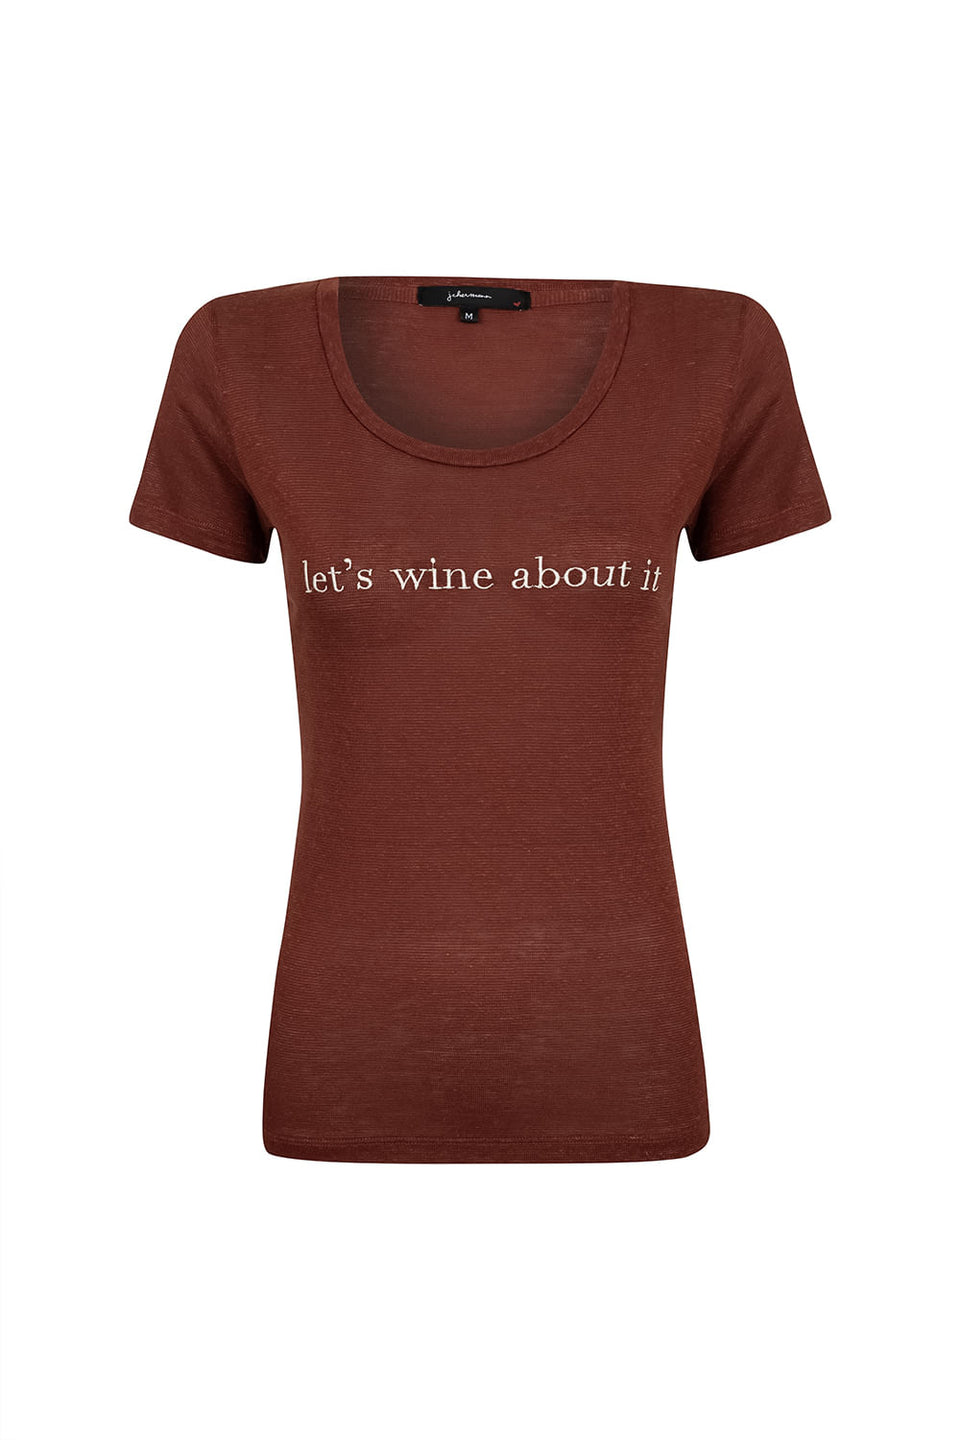 Camiseta Let's Wine Chocolate